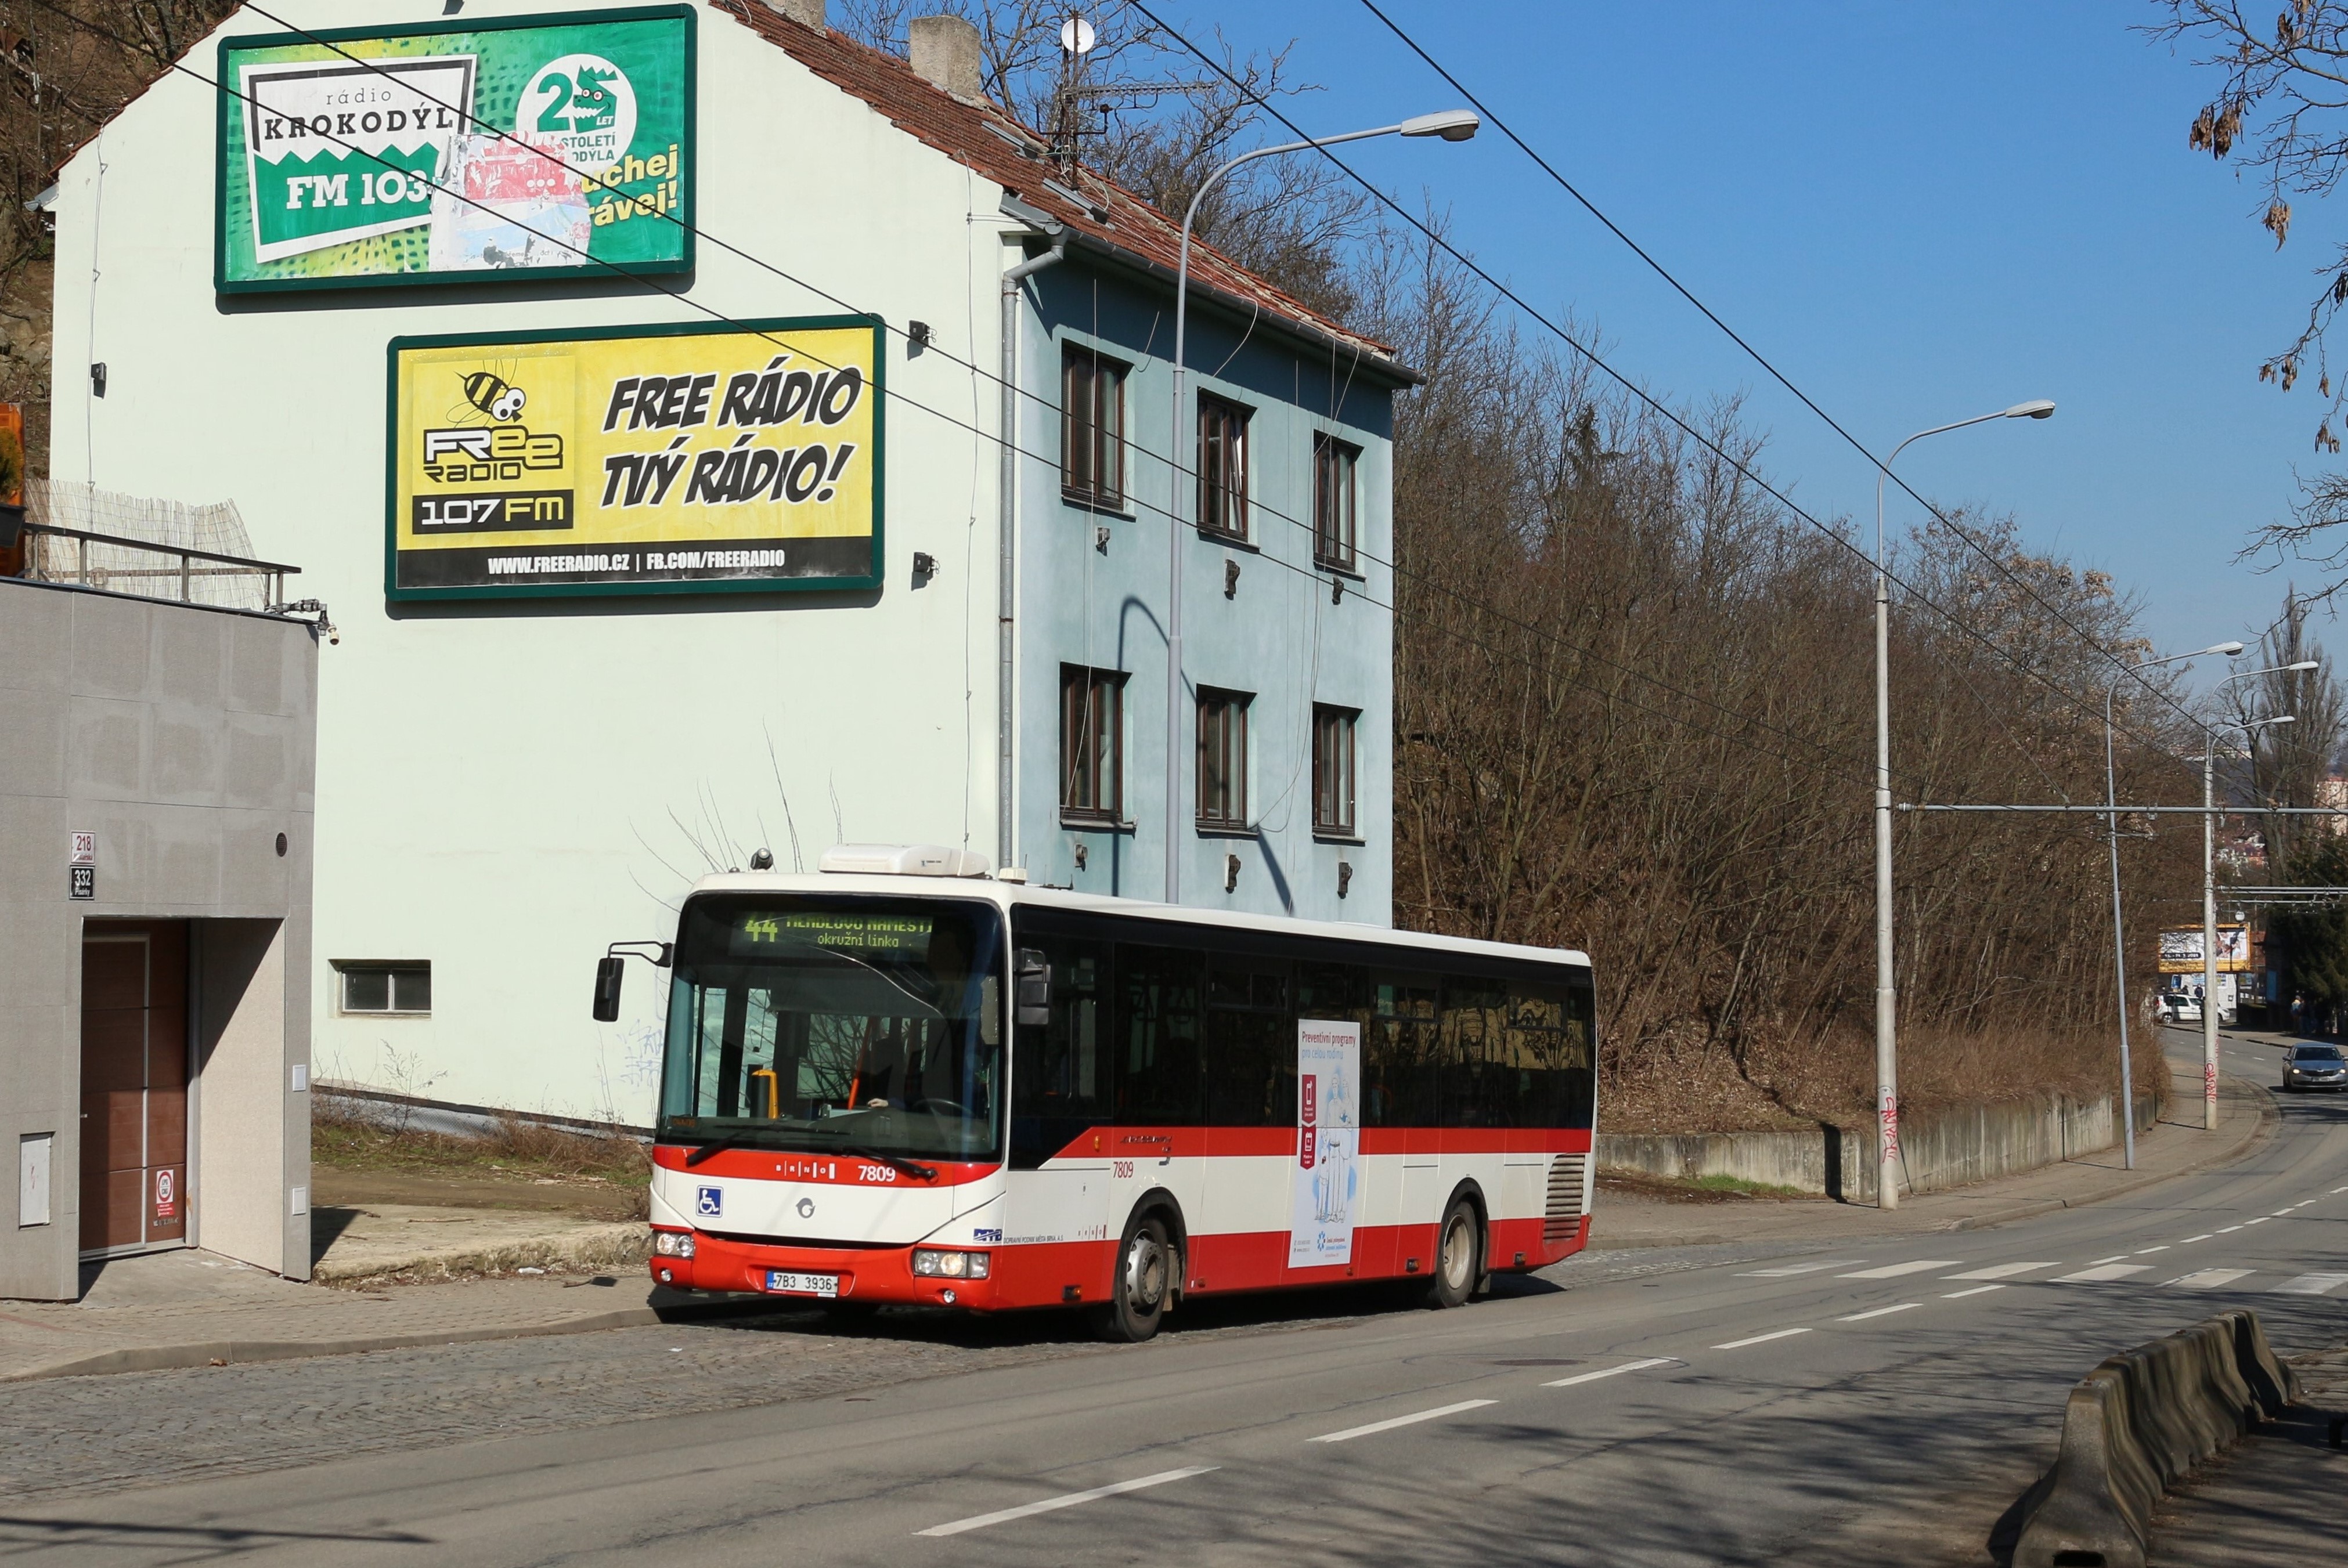 Brno, Irisbus Crossway LE 12M # 7809